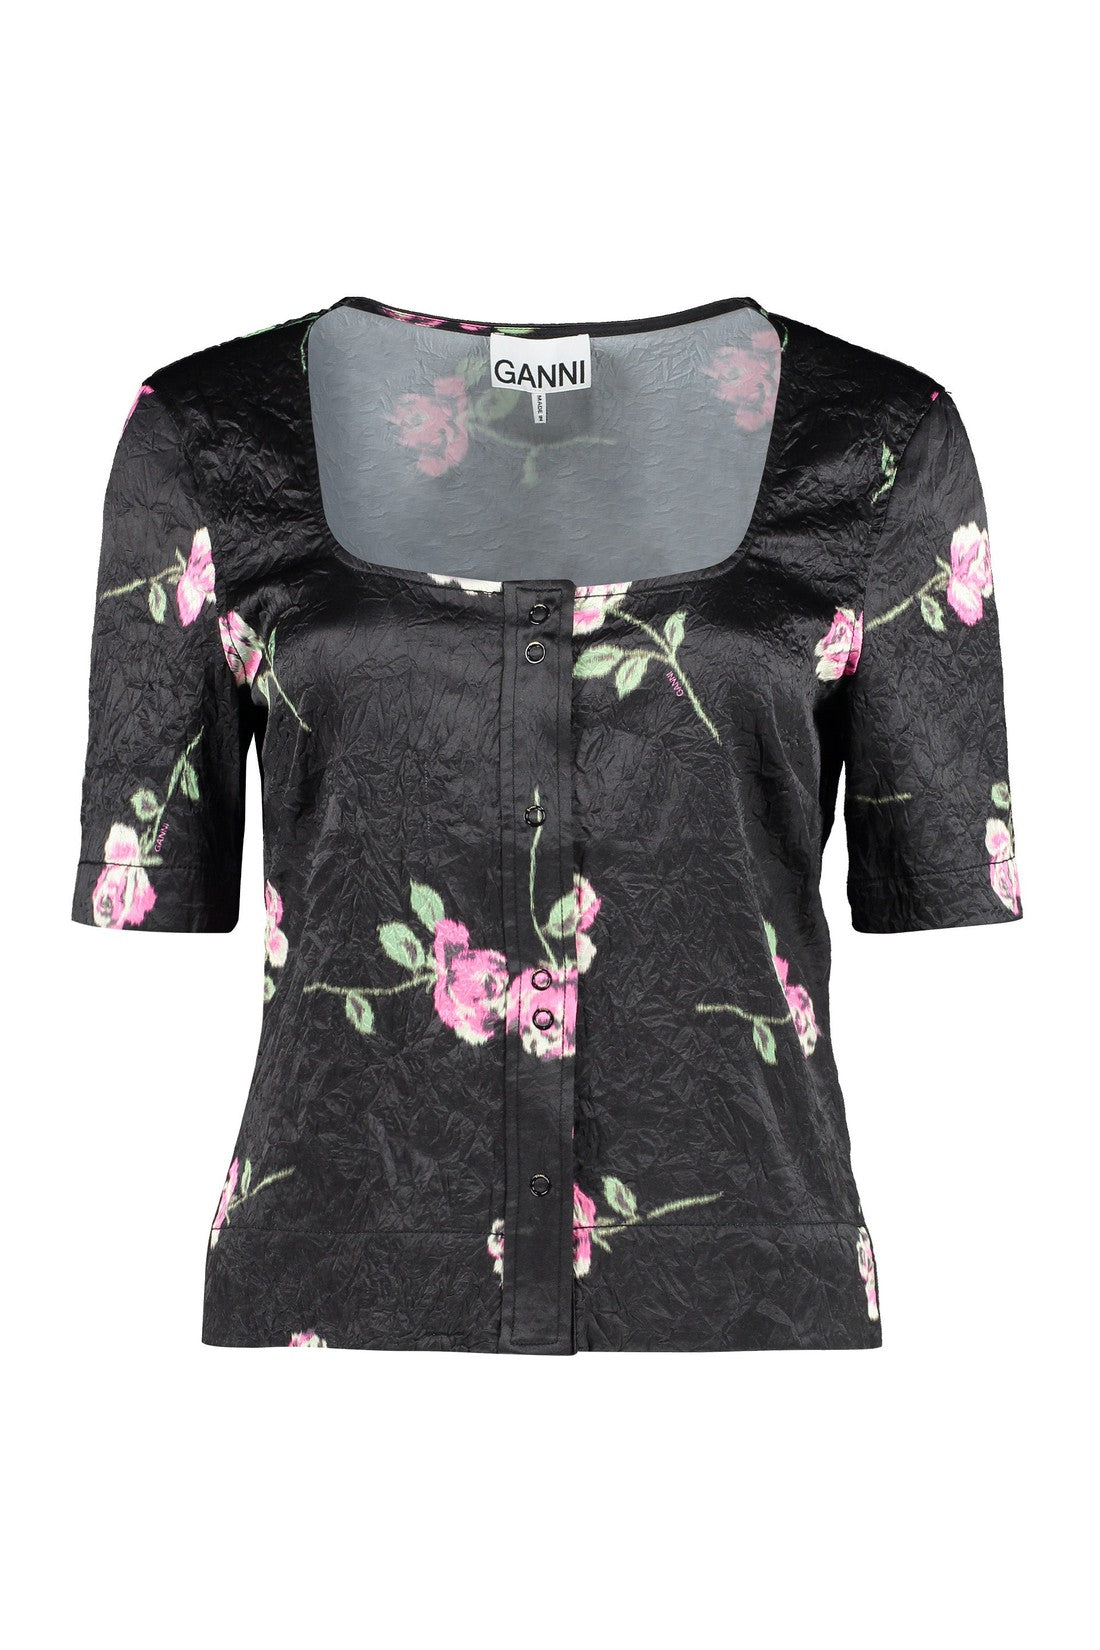 GANNI-OUTLET-SALE-Print blouse-ARCHIVIST